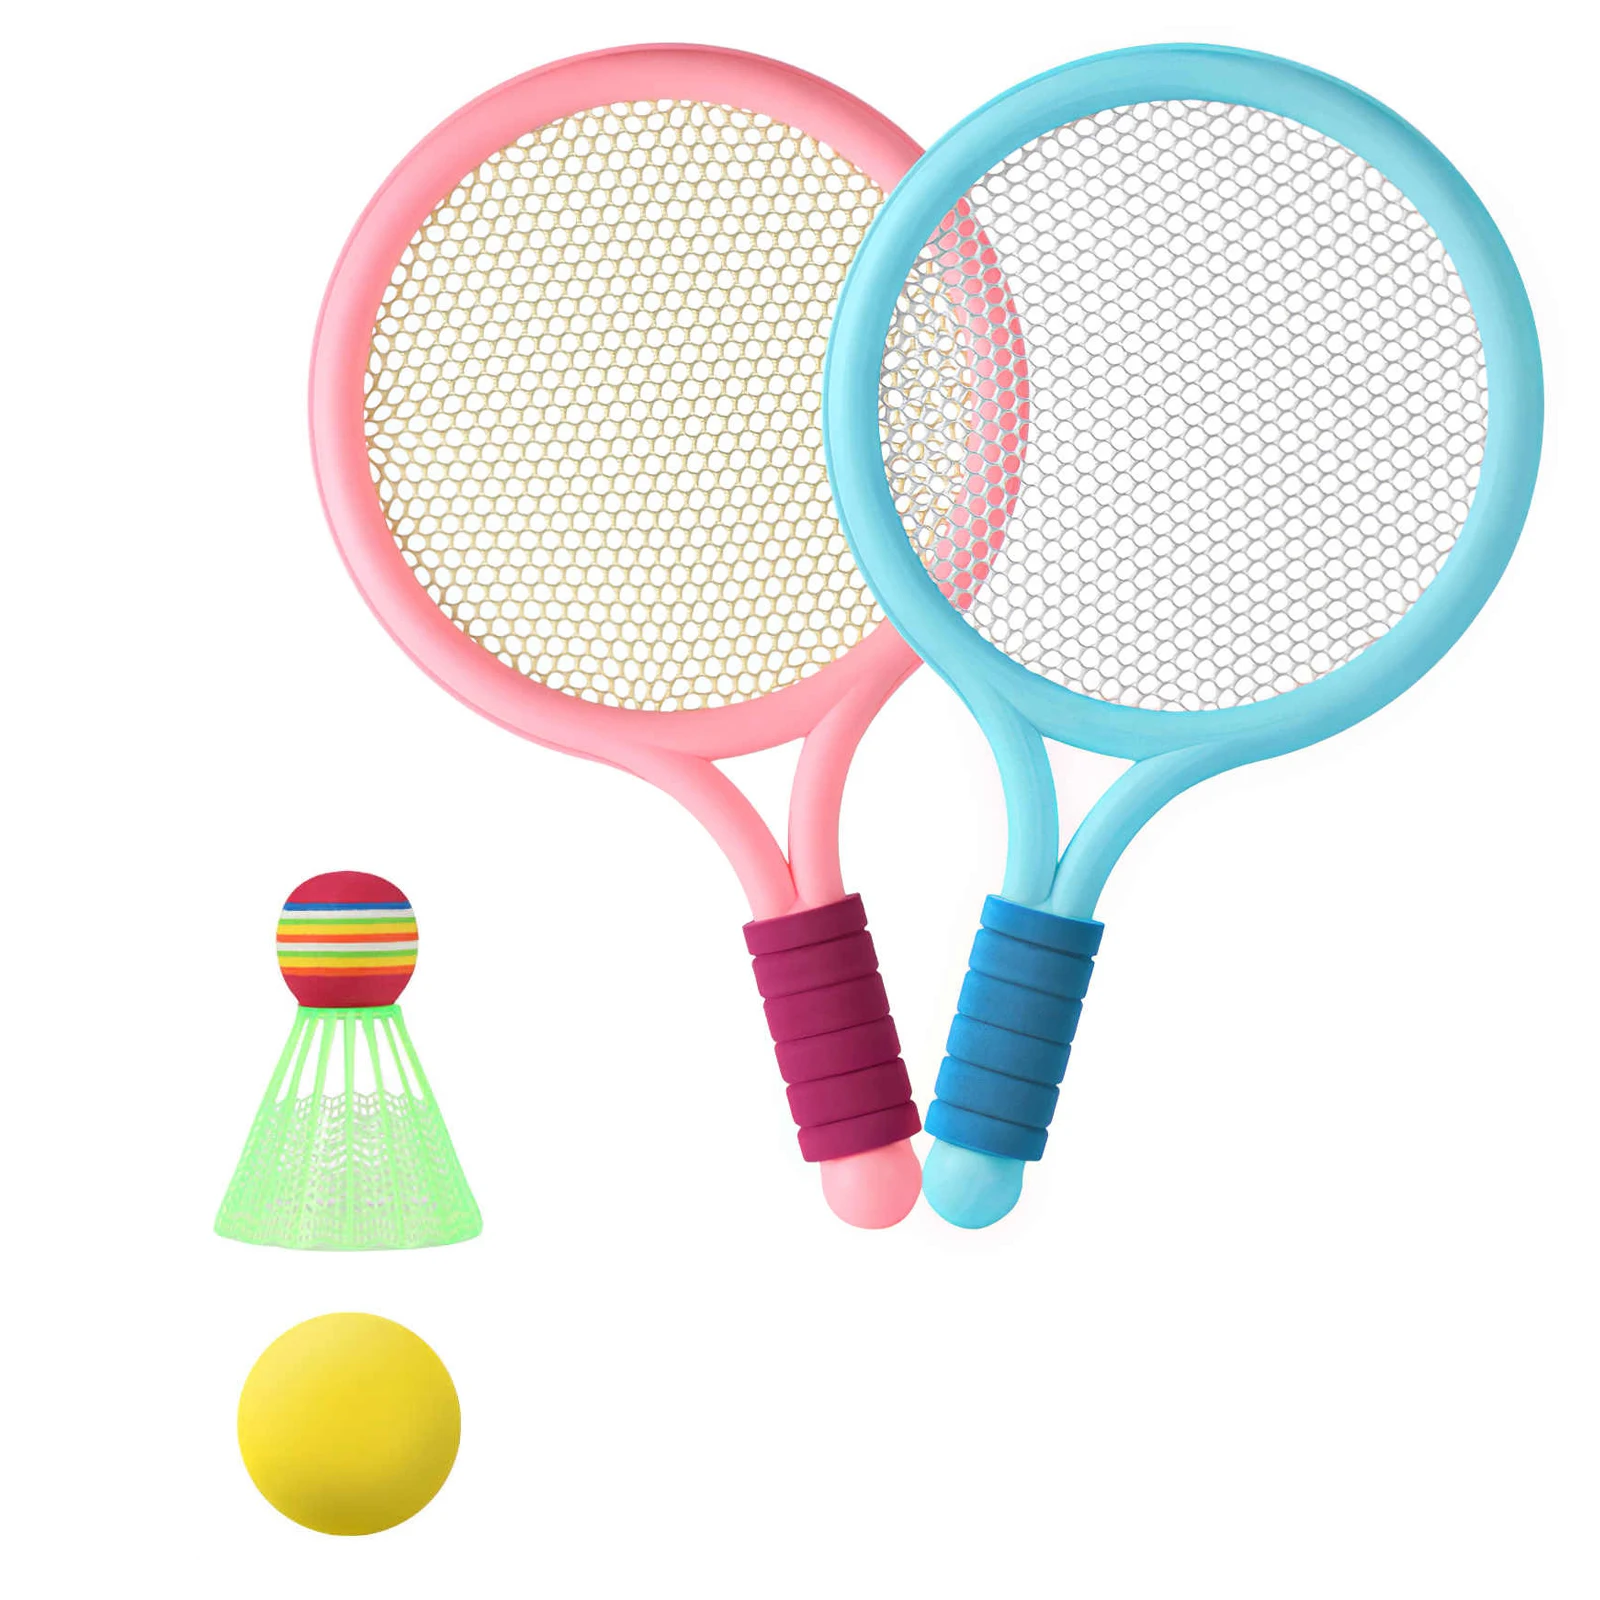 

Детская игрушка для игры в бадминтон, легкий портативный комплект теннисных ракеток с 2 мячиками, прочная забавная пляжная игрушка для спор...